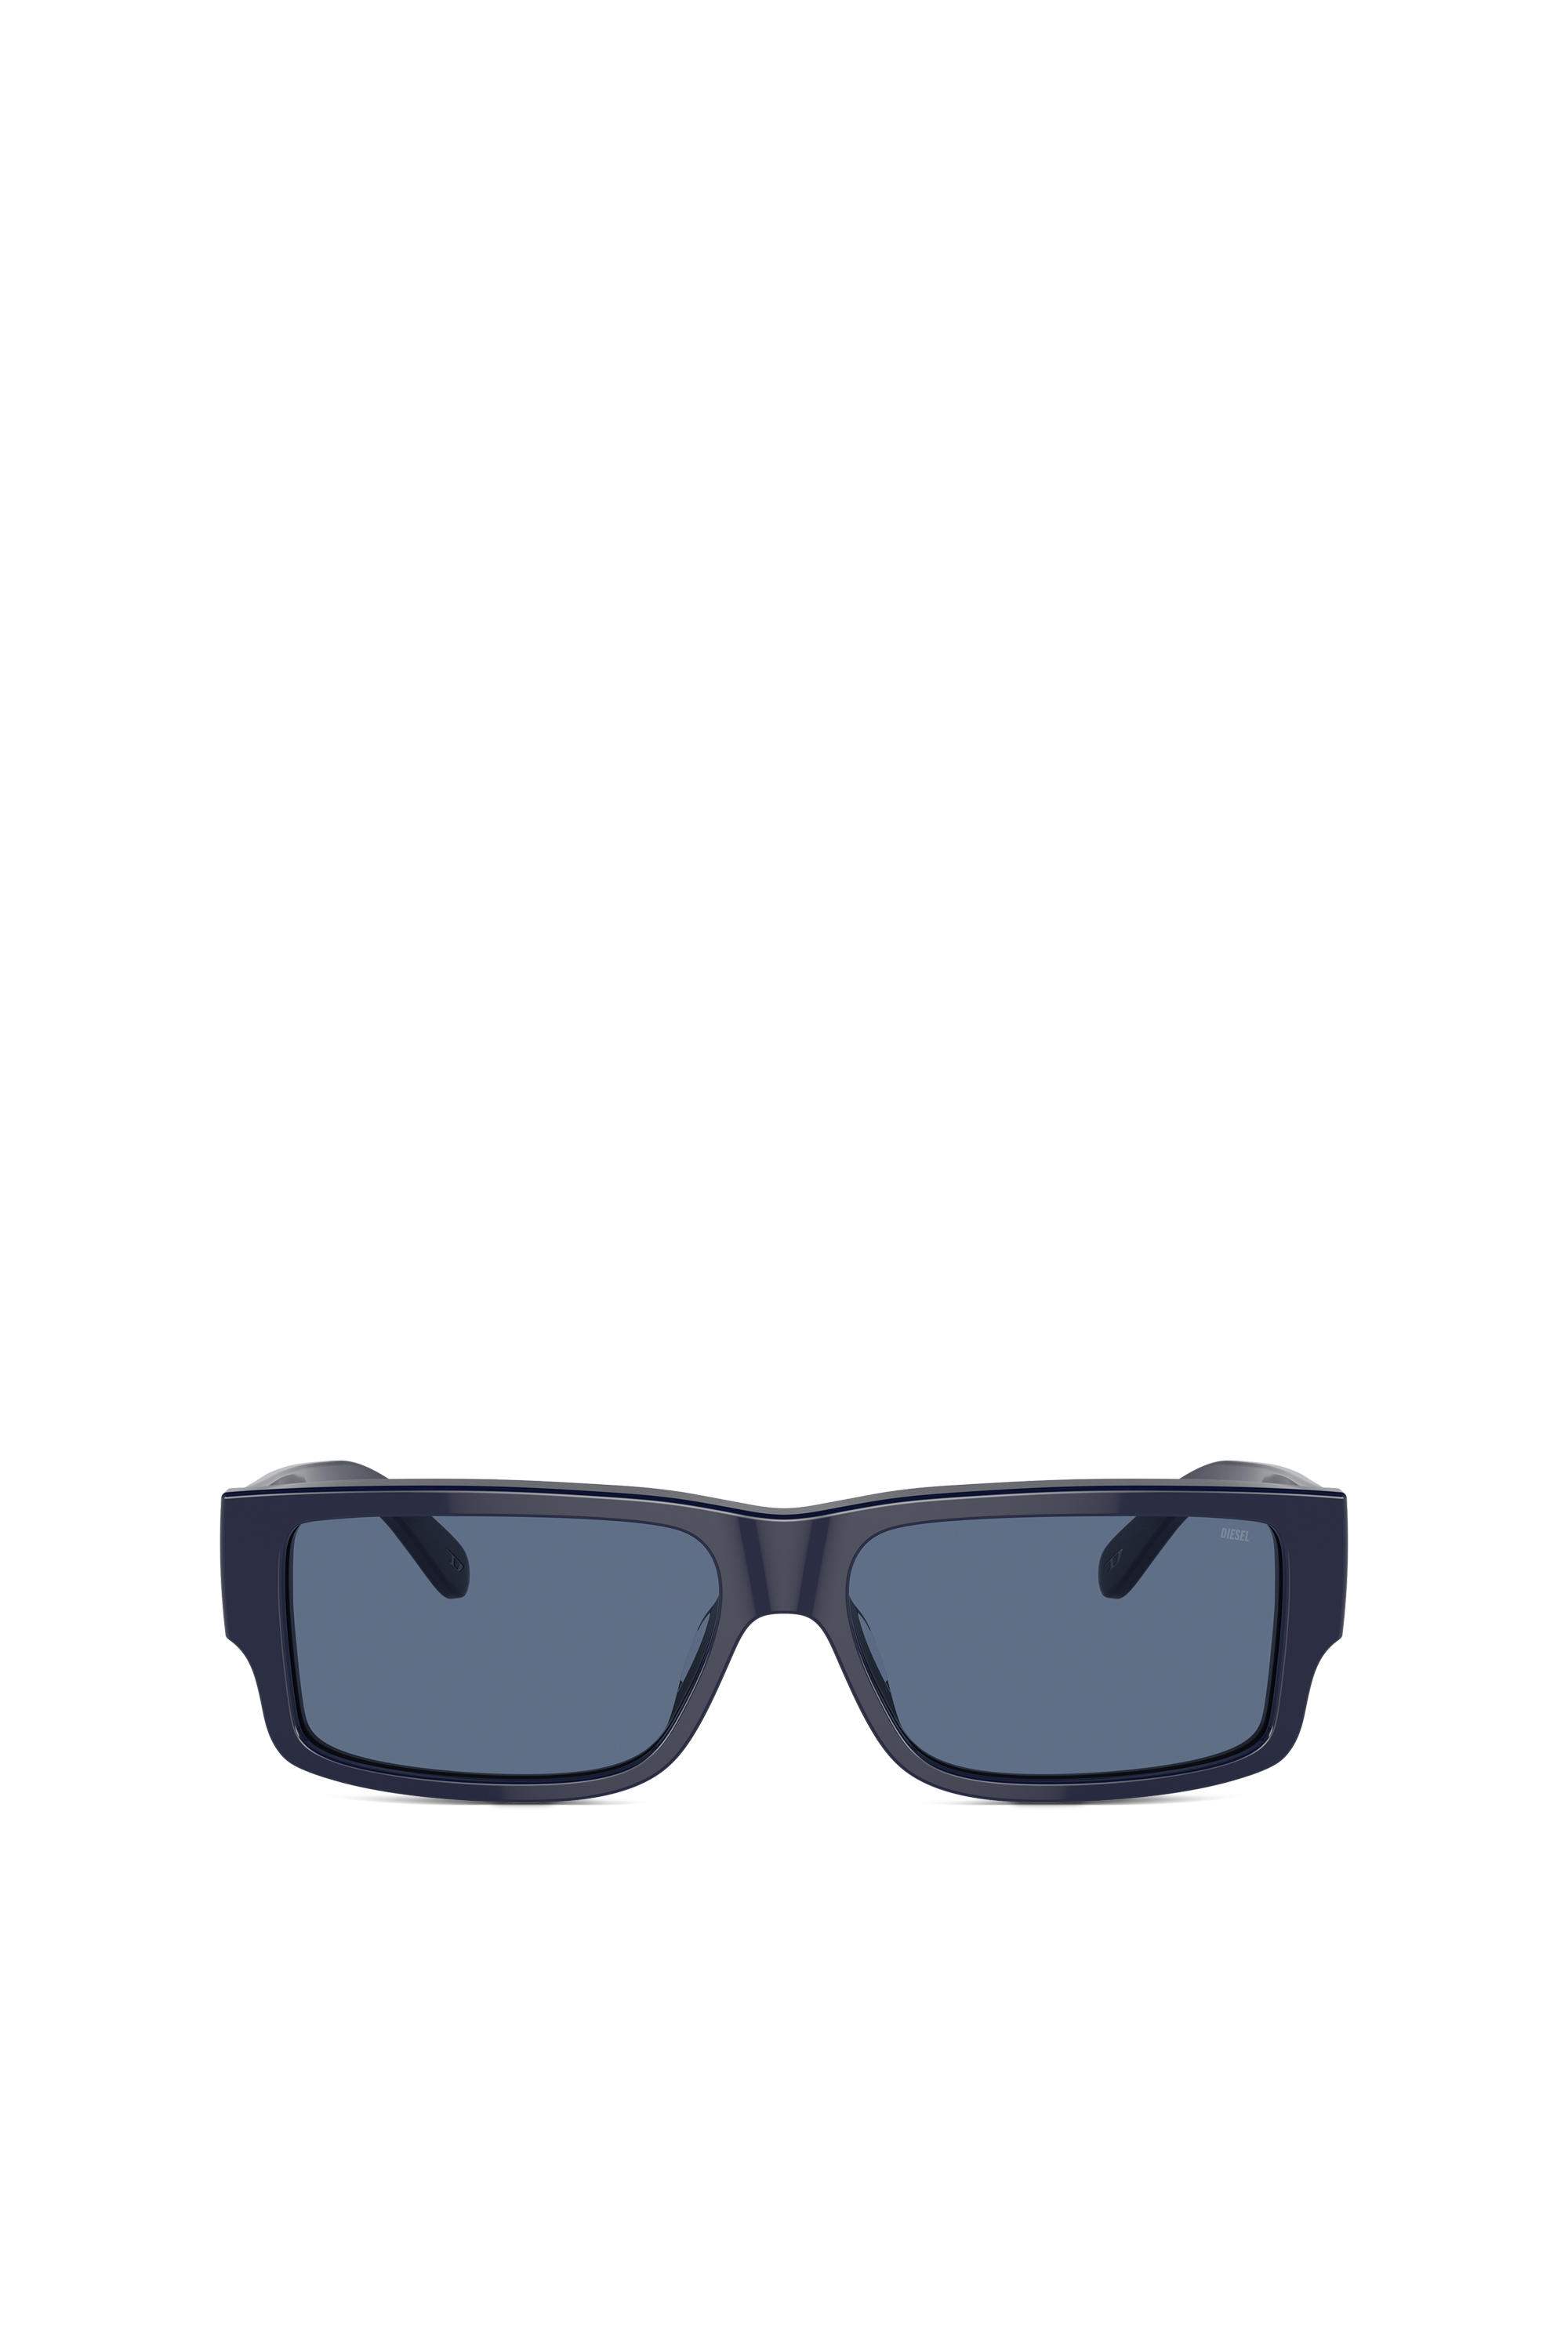 Diesel Rectangle Sunglasses In Blu